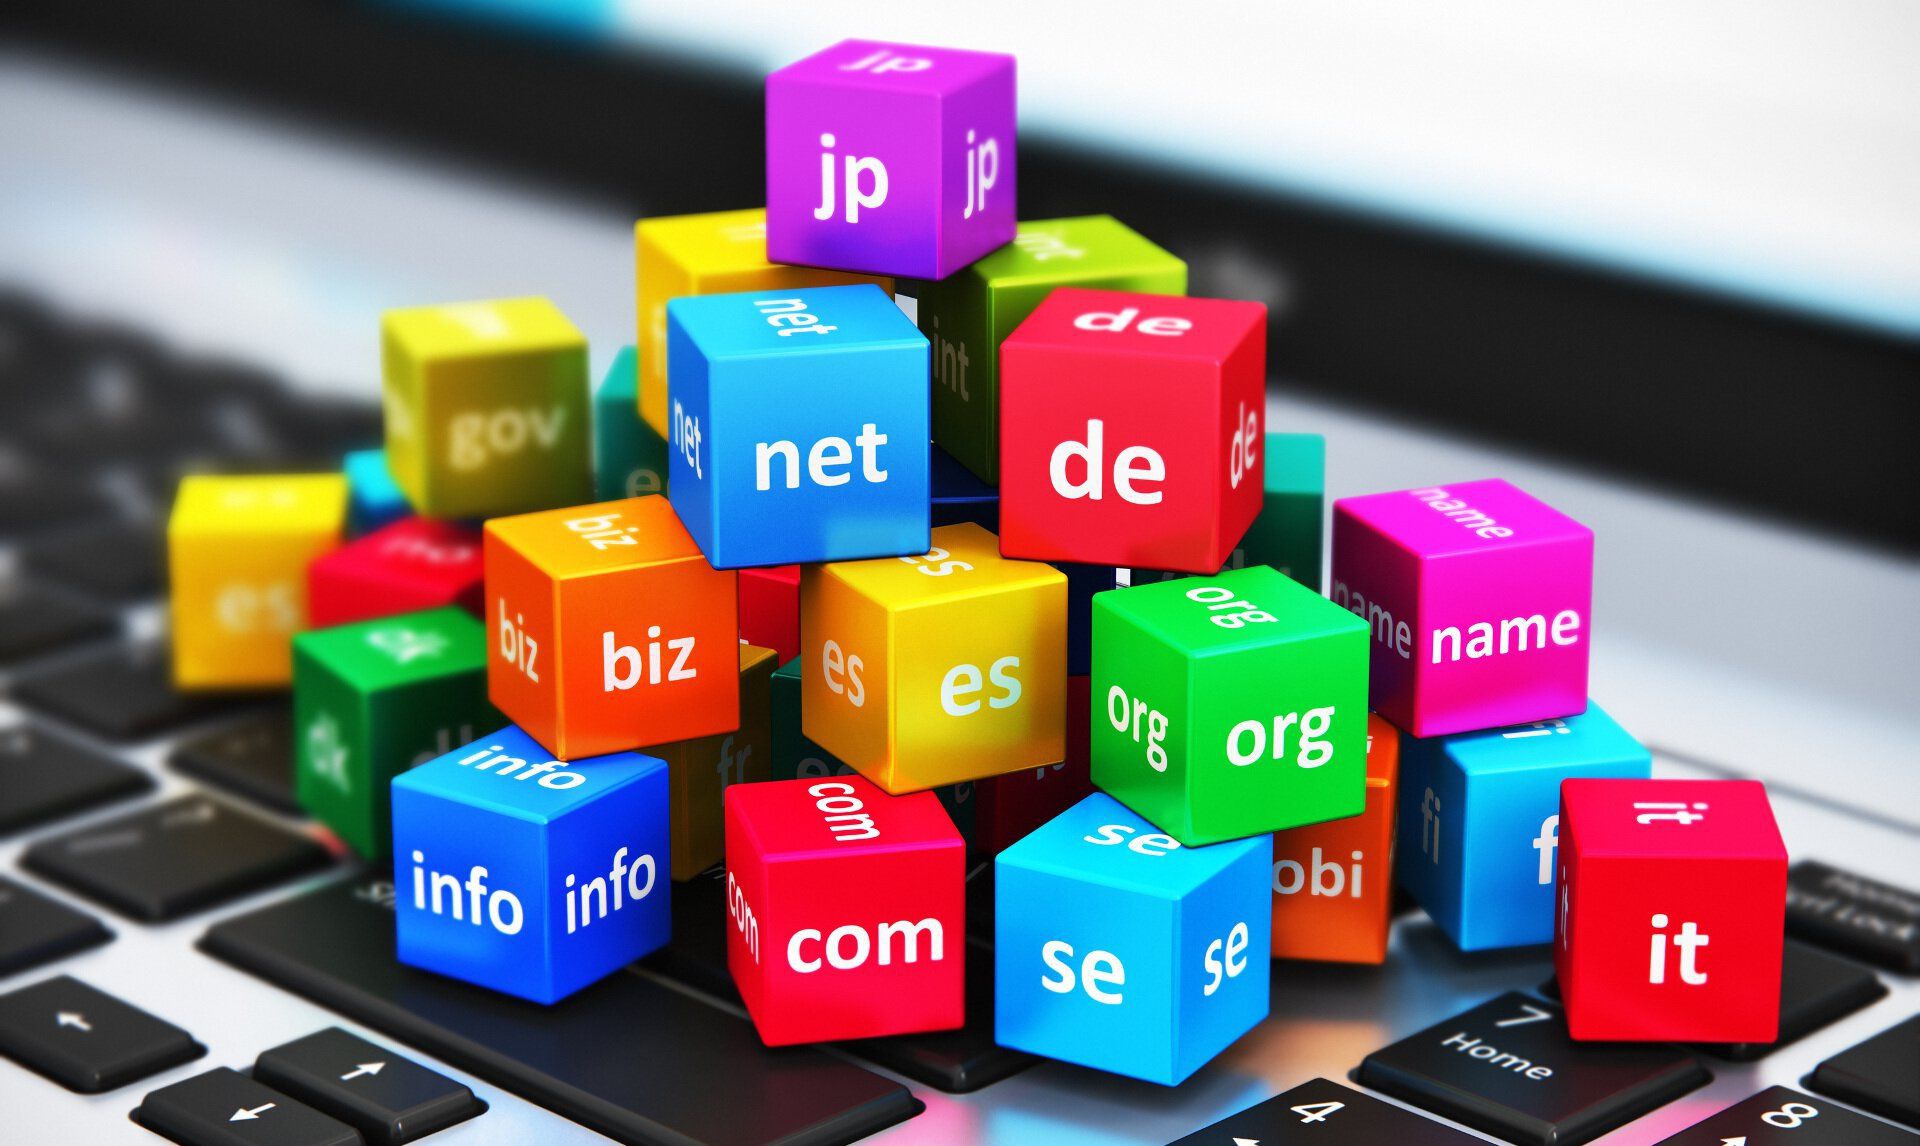 Интернет достиг 354,7 миллиона регистраций доменных имен во втором квартале 2019 года